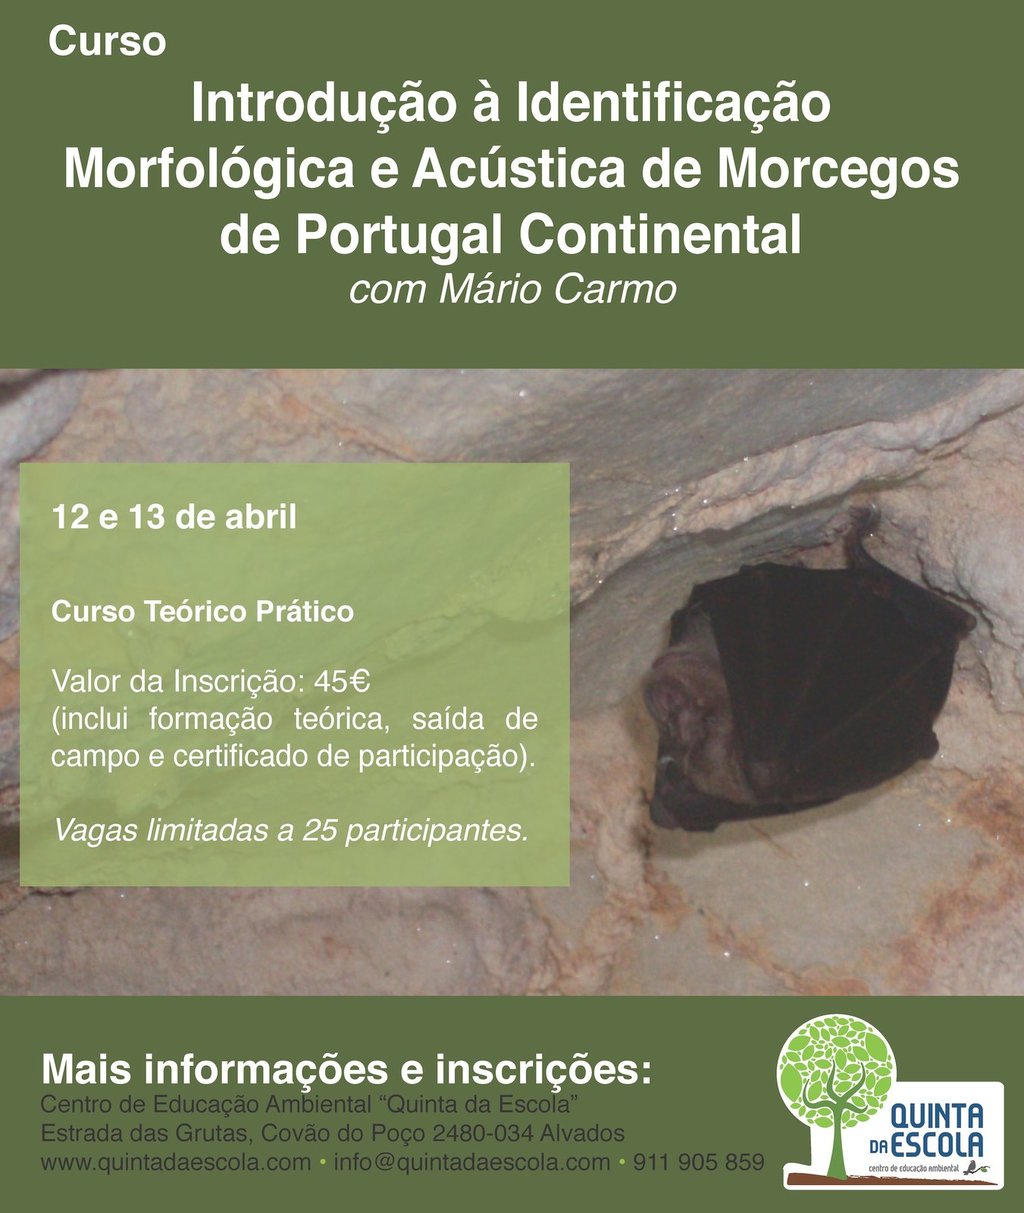 Curso de Introdução à Identificação Morfológica e Acustica de Morcegos de Portugal Continental